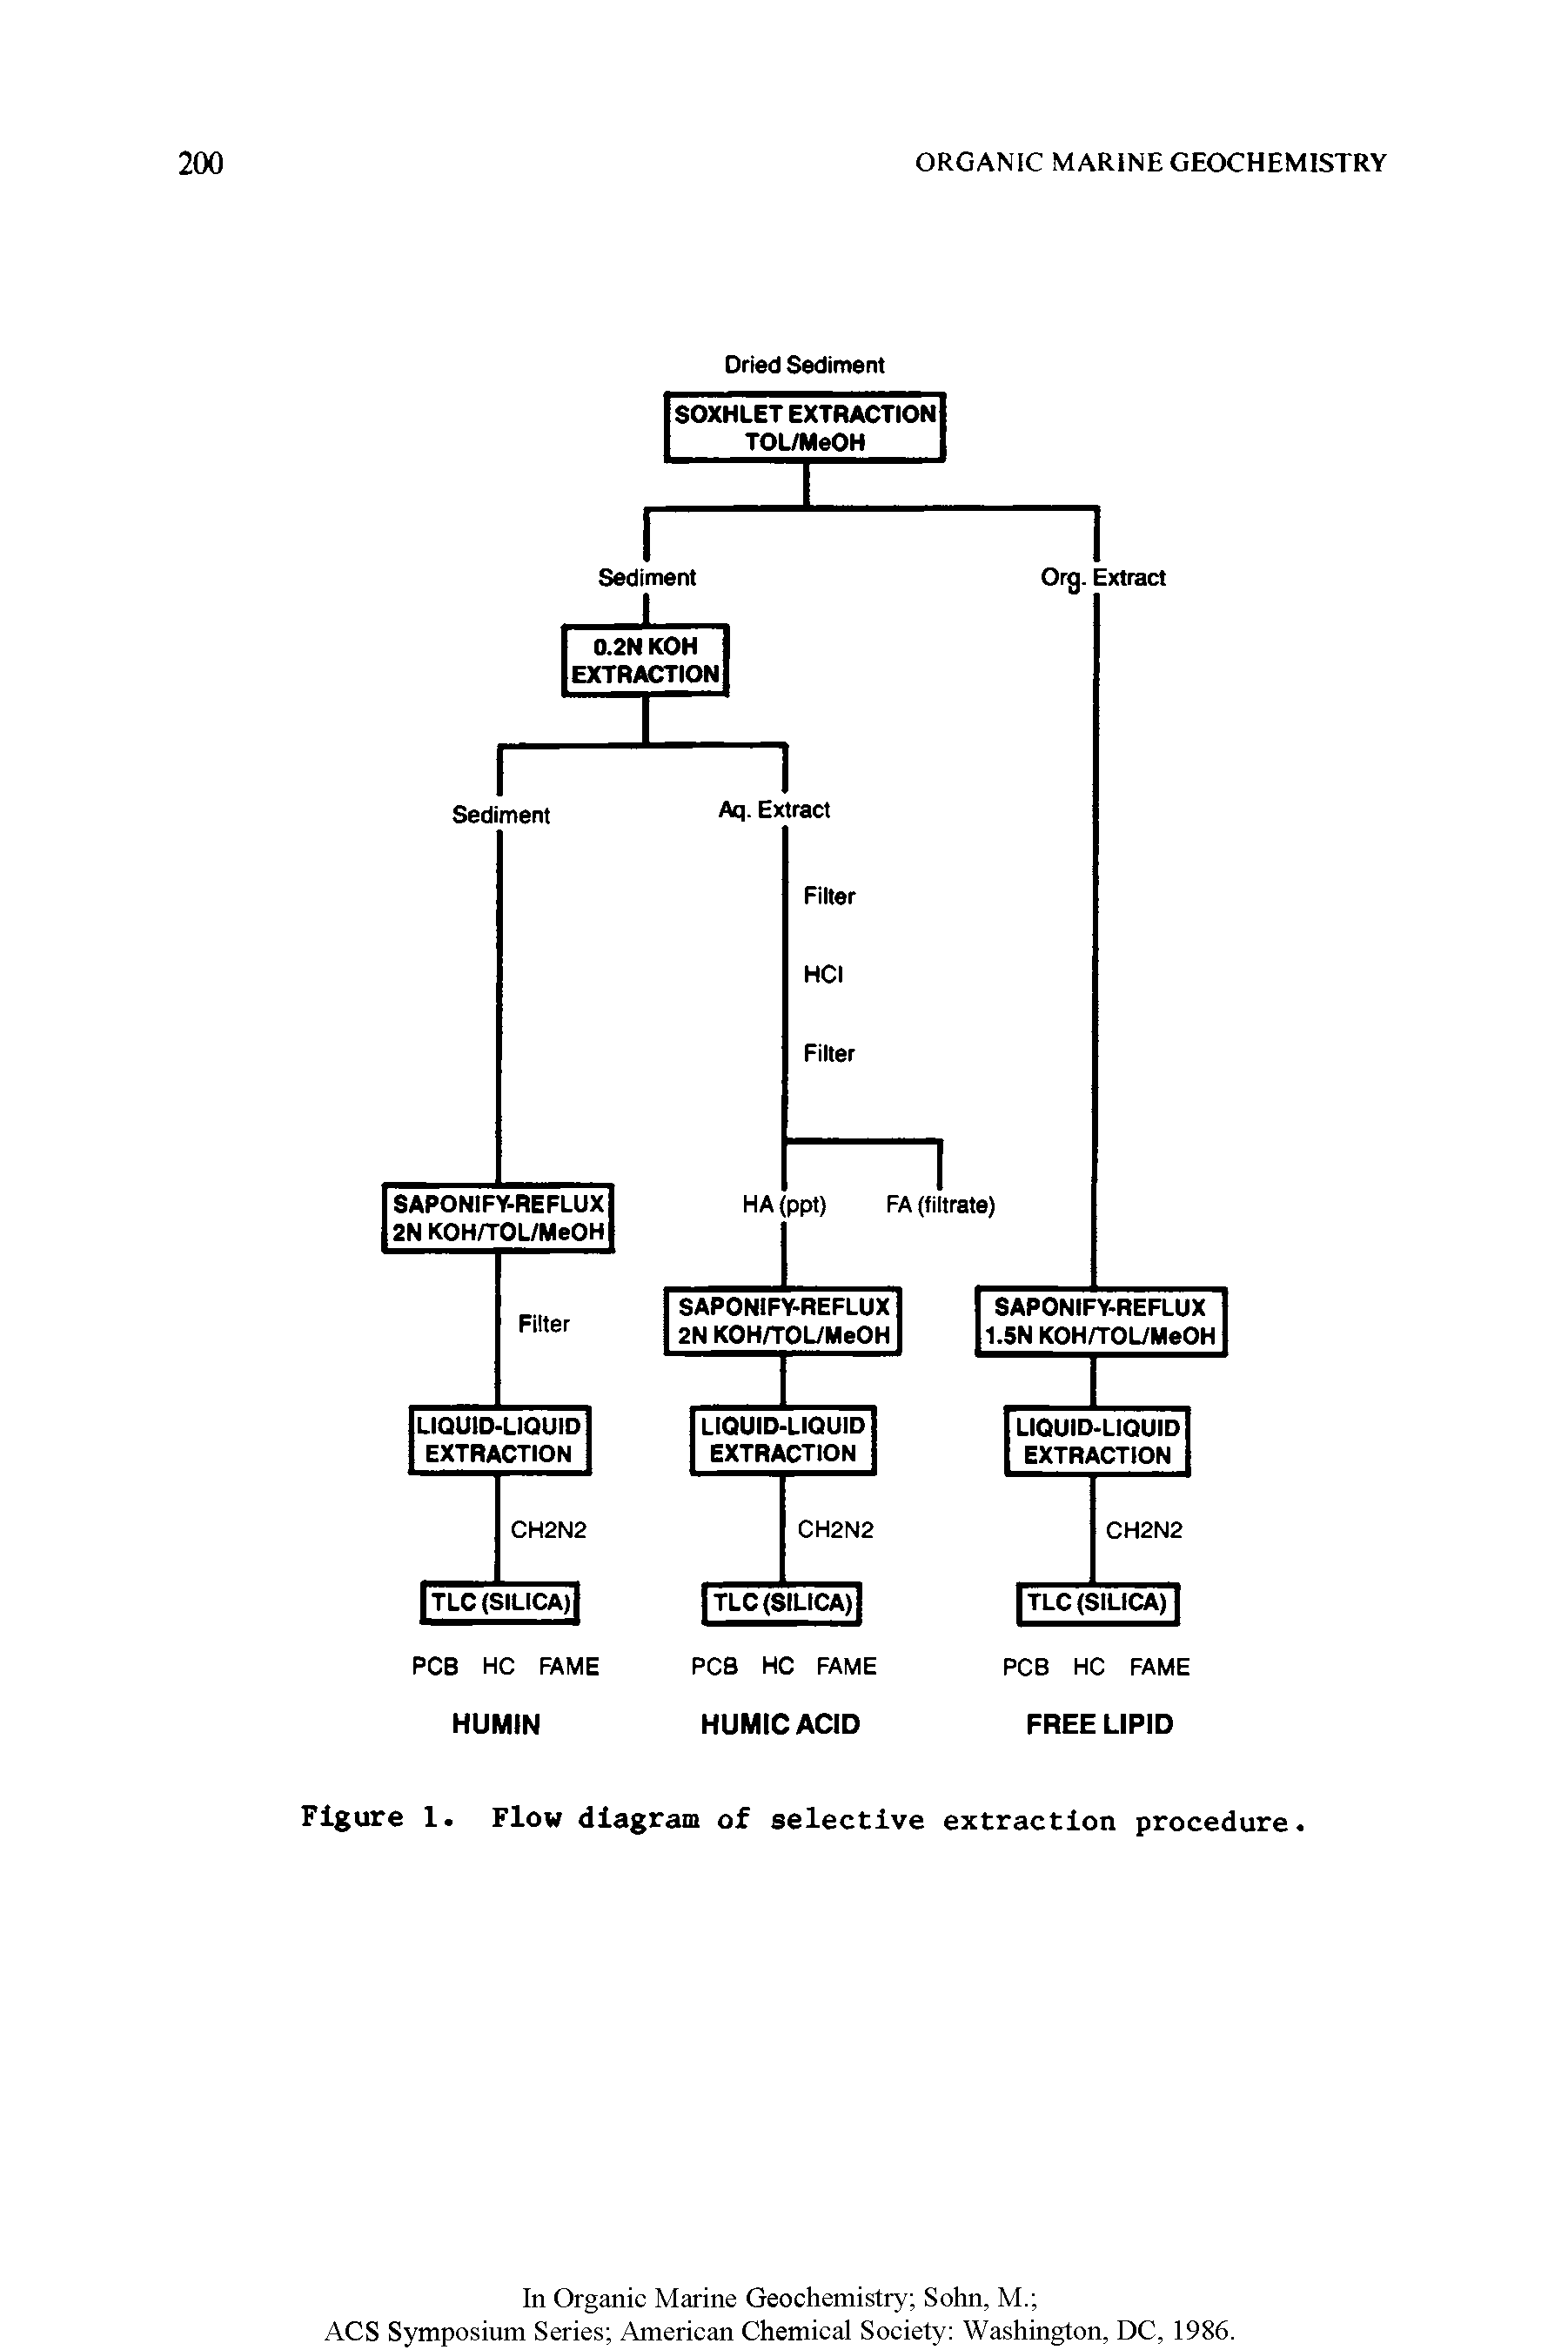 Figure 1. Flow diagram of selective extraction procedure.